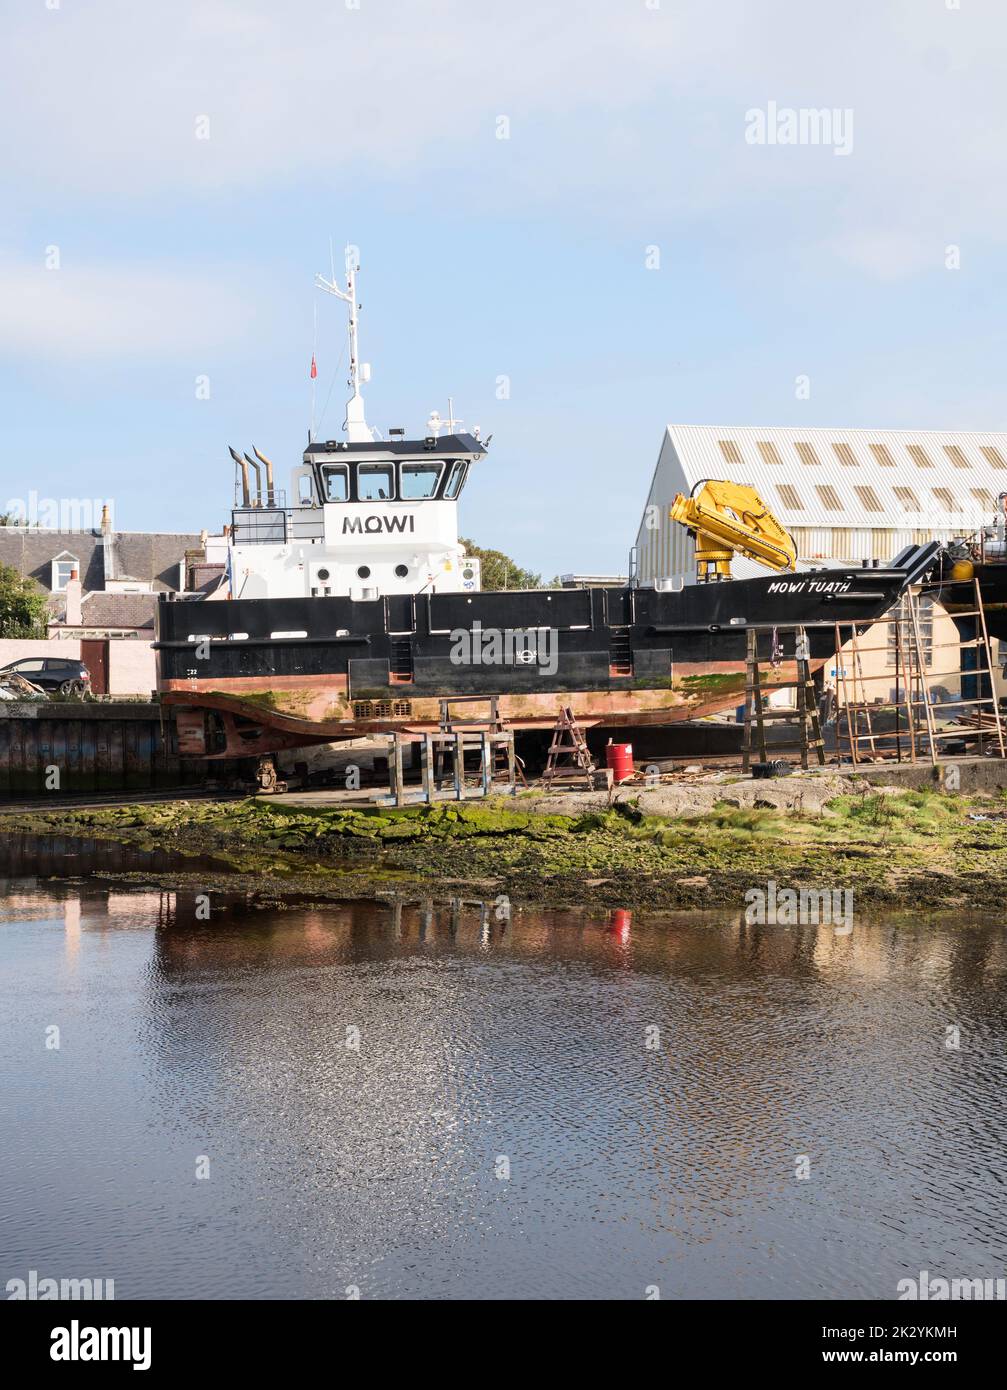 La salmoniculture soutient le navire Mowi Tuath, sur le chemin des ingénieurs marins Alexander Noble & Sons, dans le port de Girvan, dans le sud de l'Ayrshire, en Écosse, au Royaume-Uni Banque D'Images